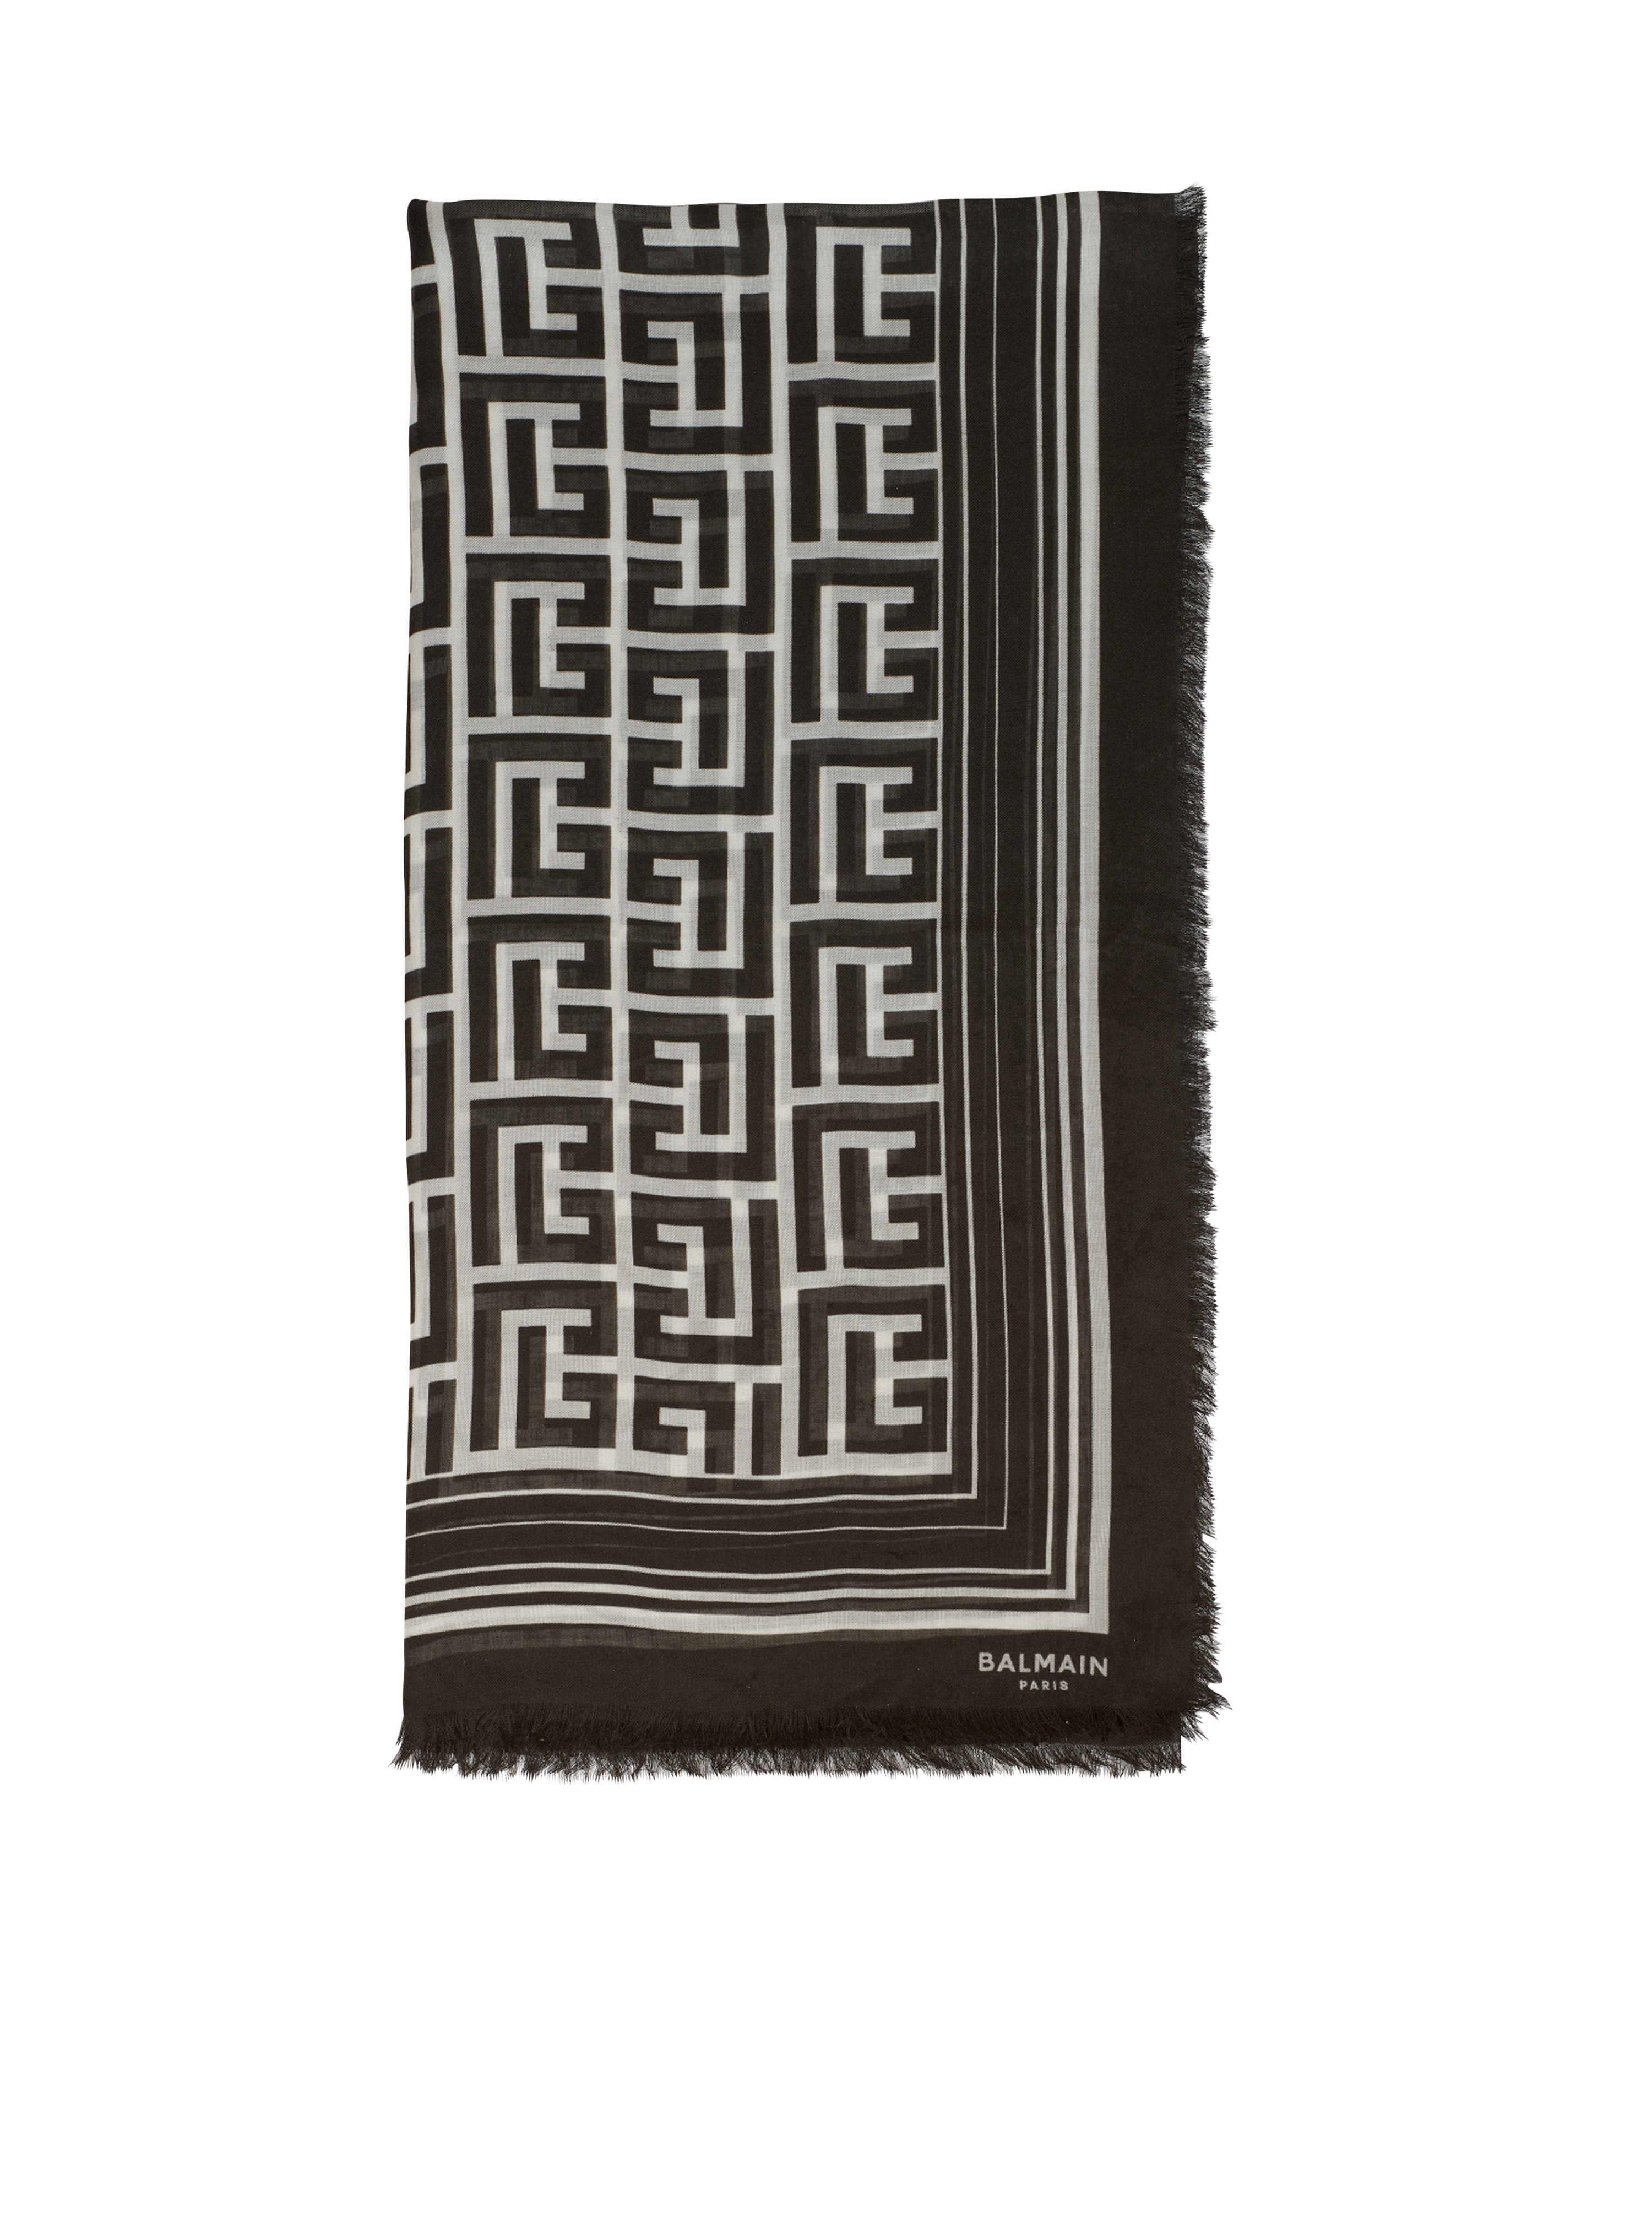 Schal aus Modal mit Balmain-Monogramm-Muster, schwarz